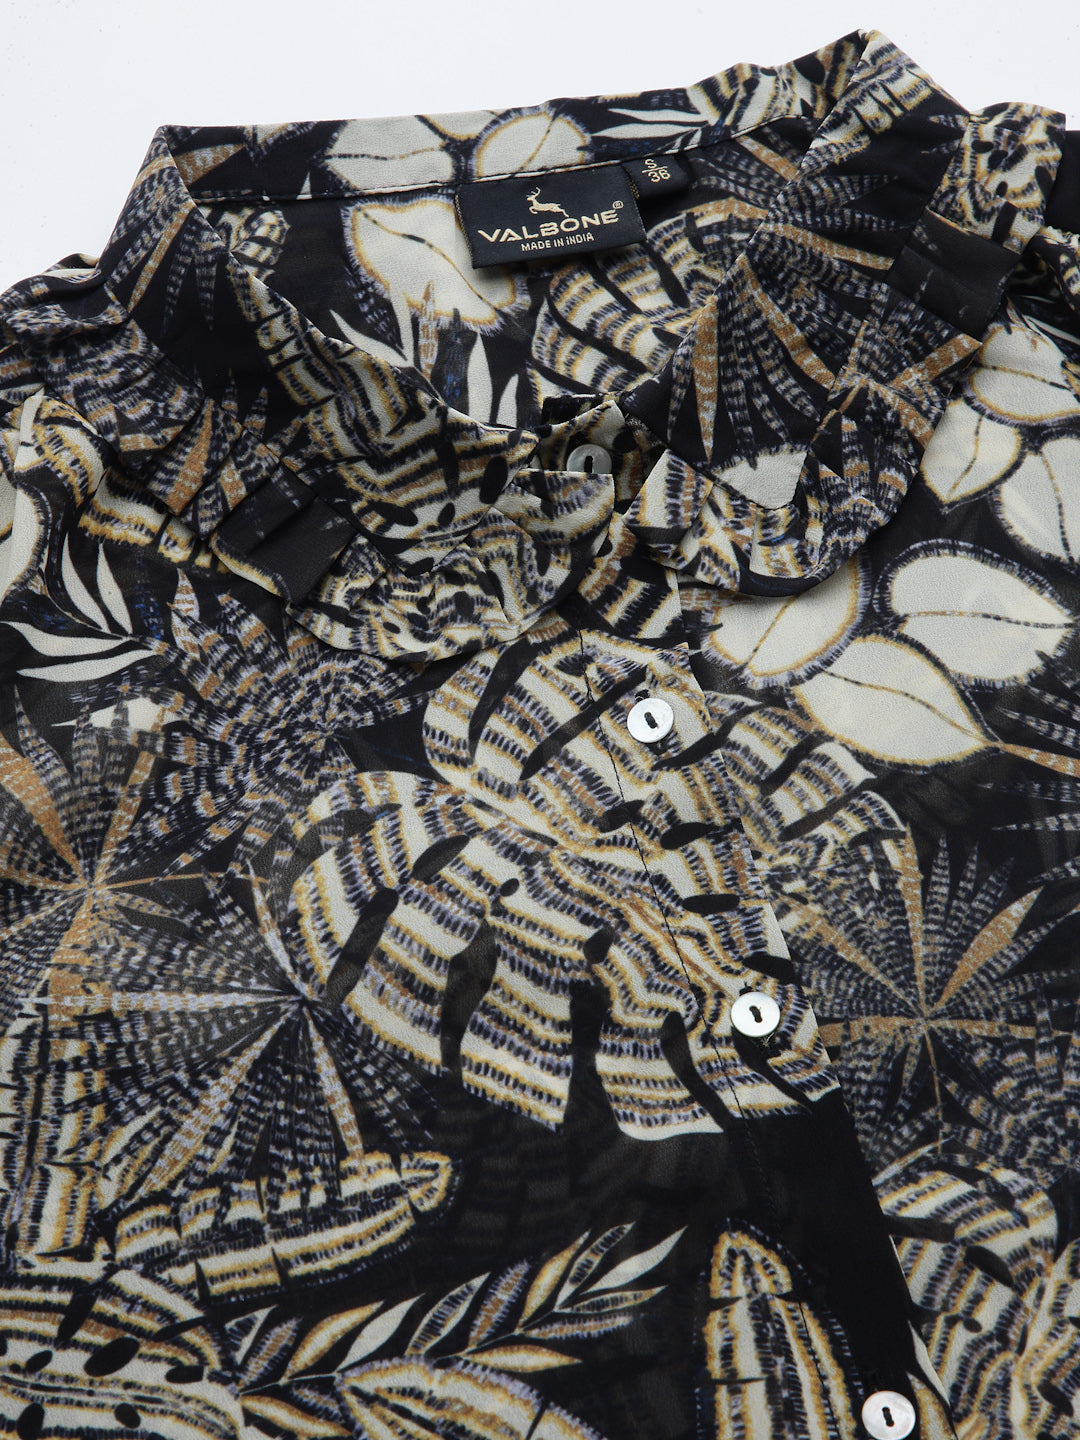 Valbone Women’s Black & Beige Georgette Floral Printed Shirt Full Sleeves